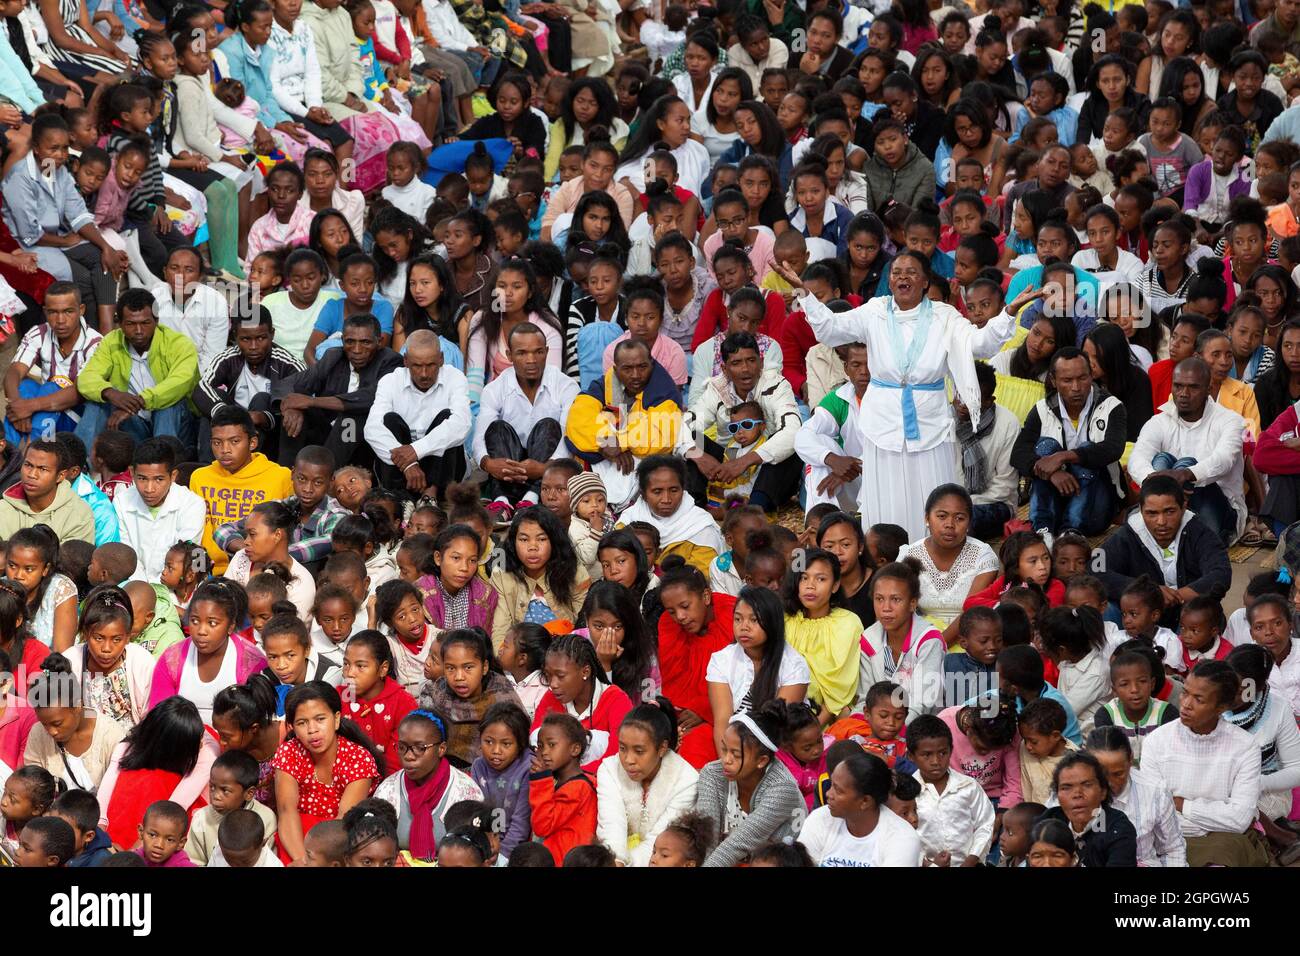 Madagascar, Analamanga region, Antananarivo (Antananarivo or Tana), Father Pedro's mass on Sunday morning Stock Photo